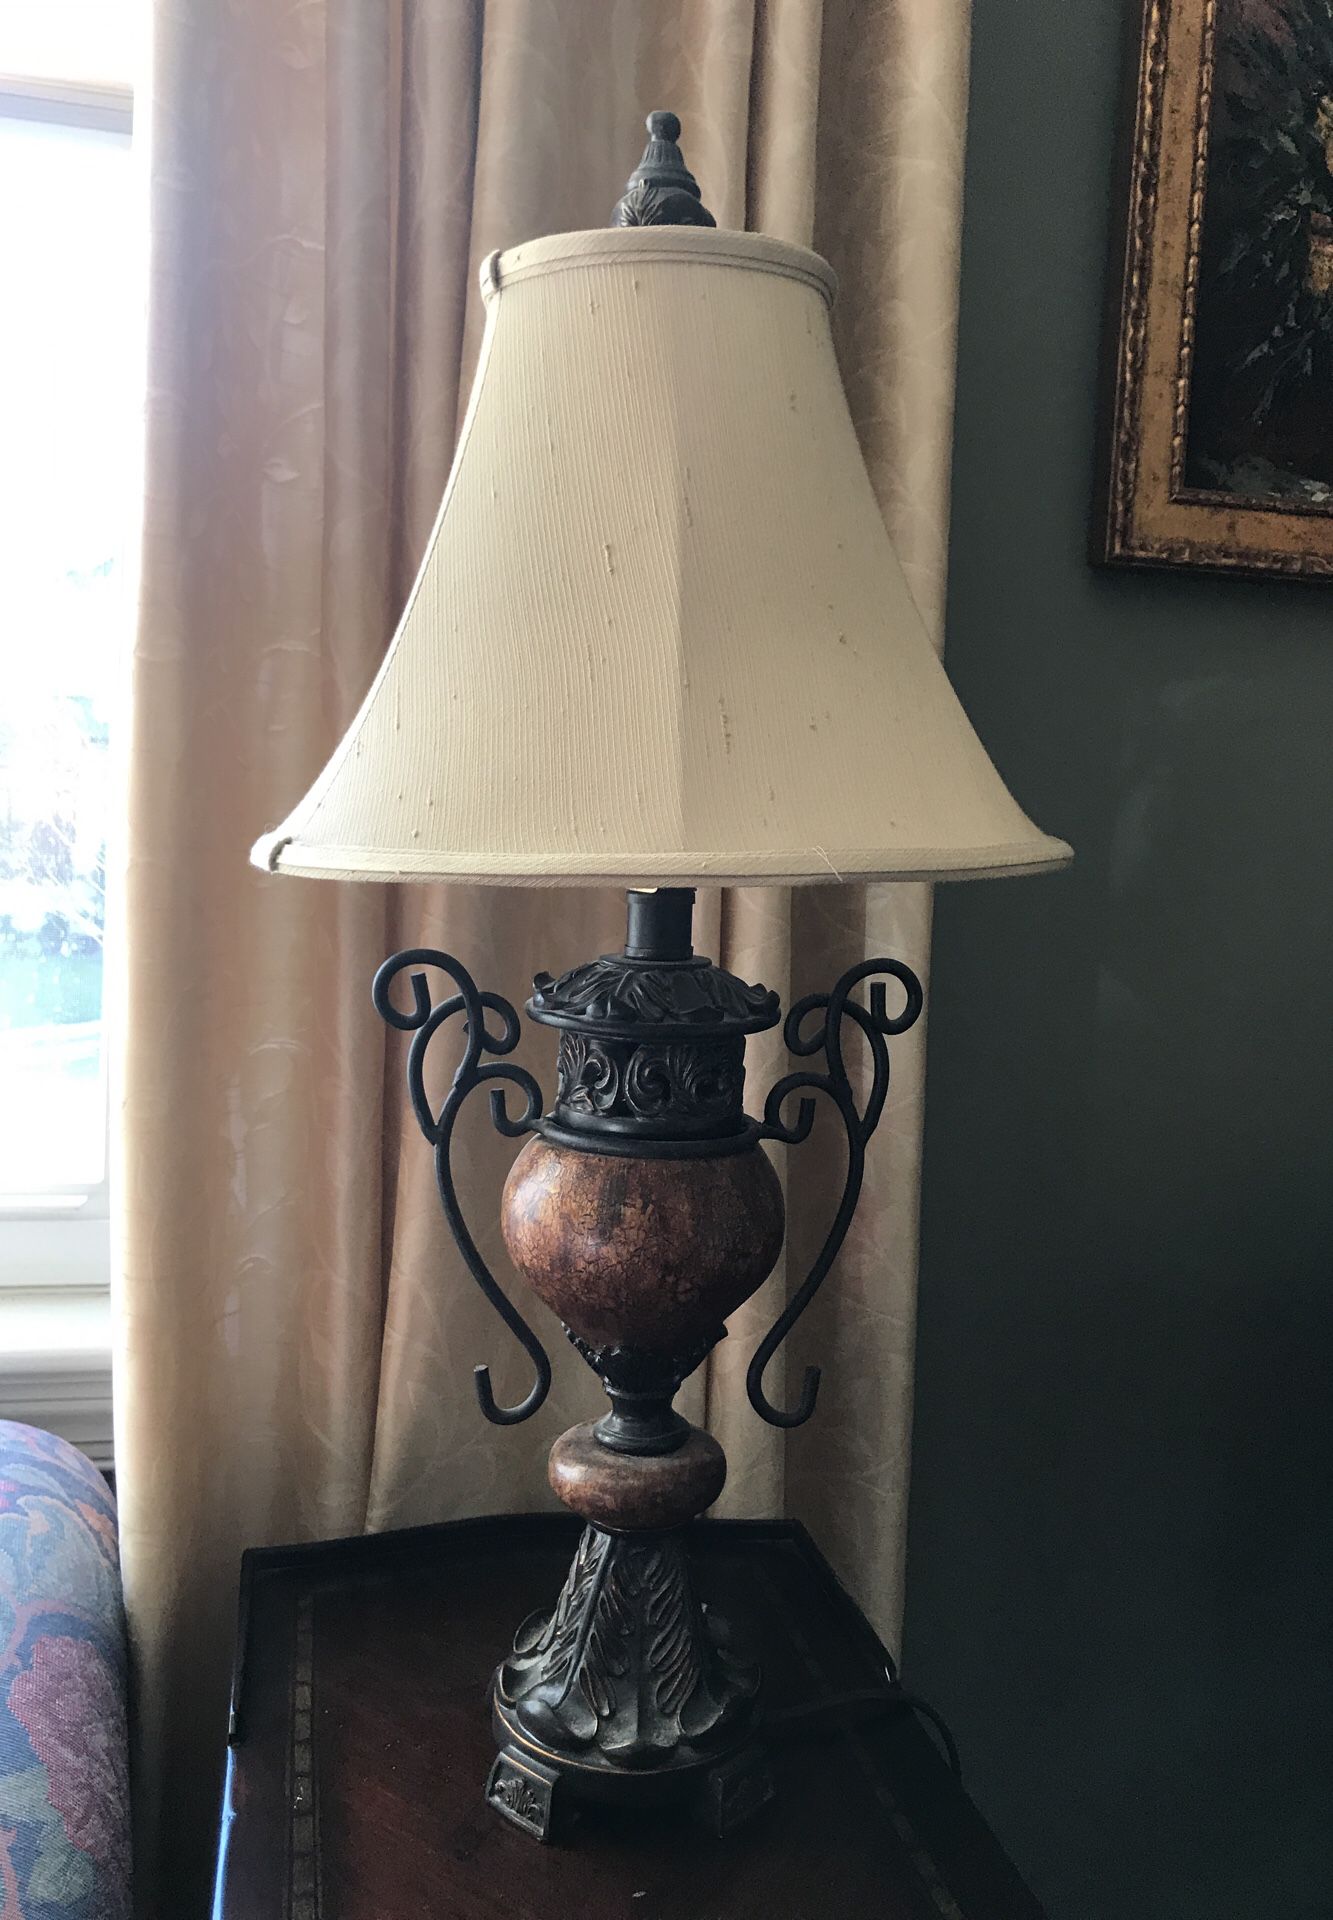 Beautiful metal work lamp - as good as new